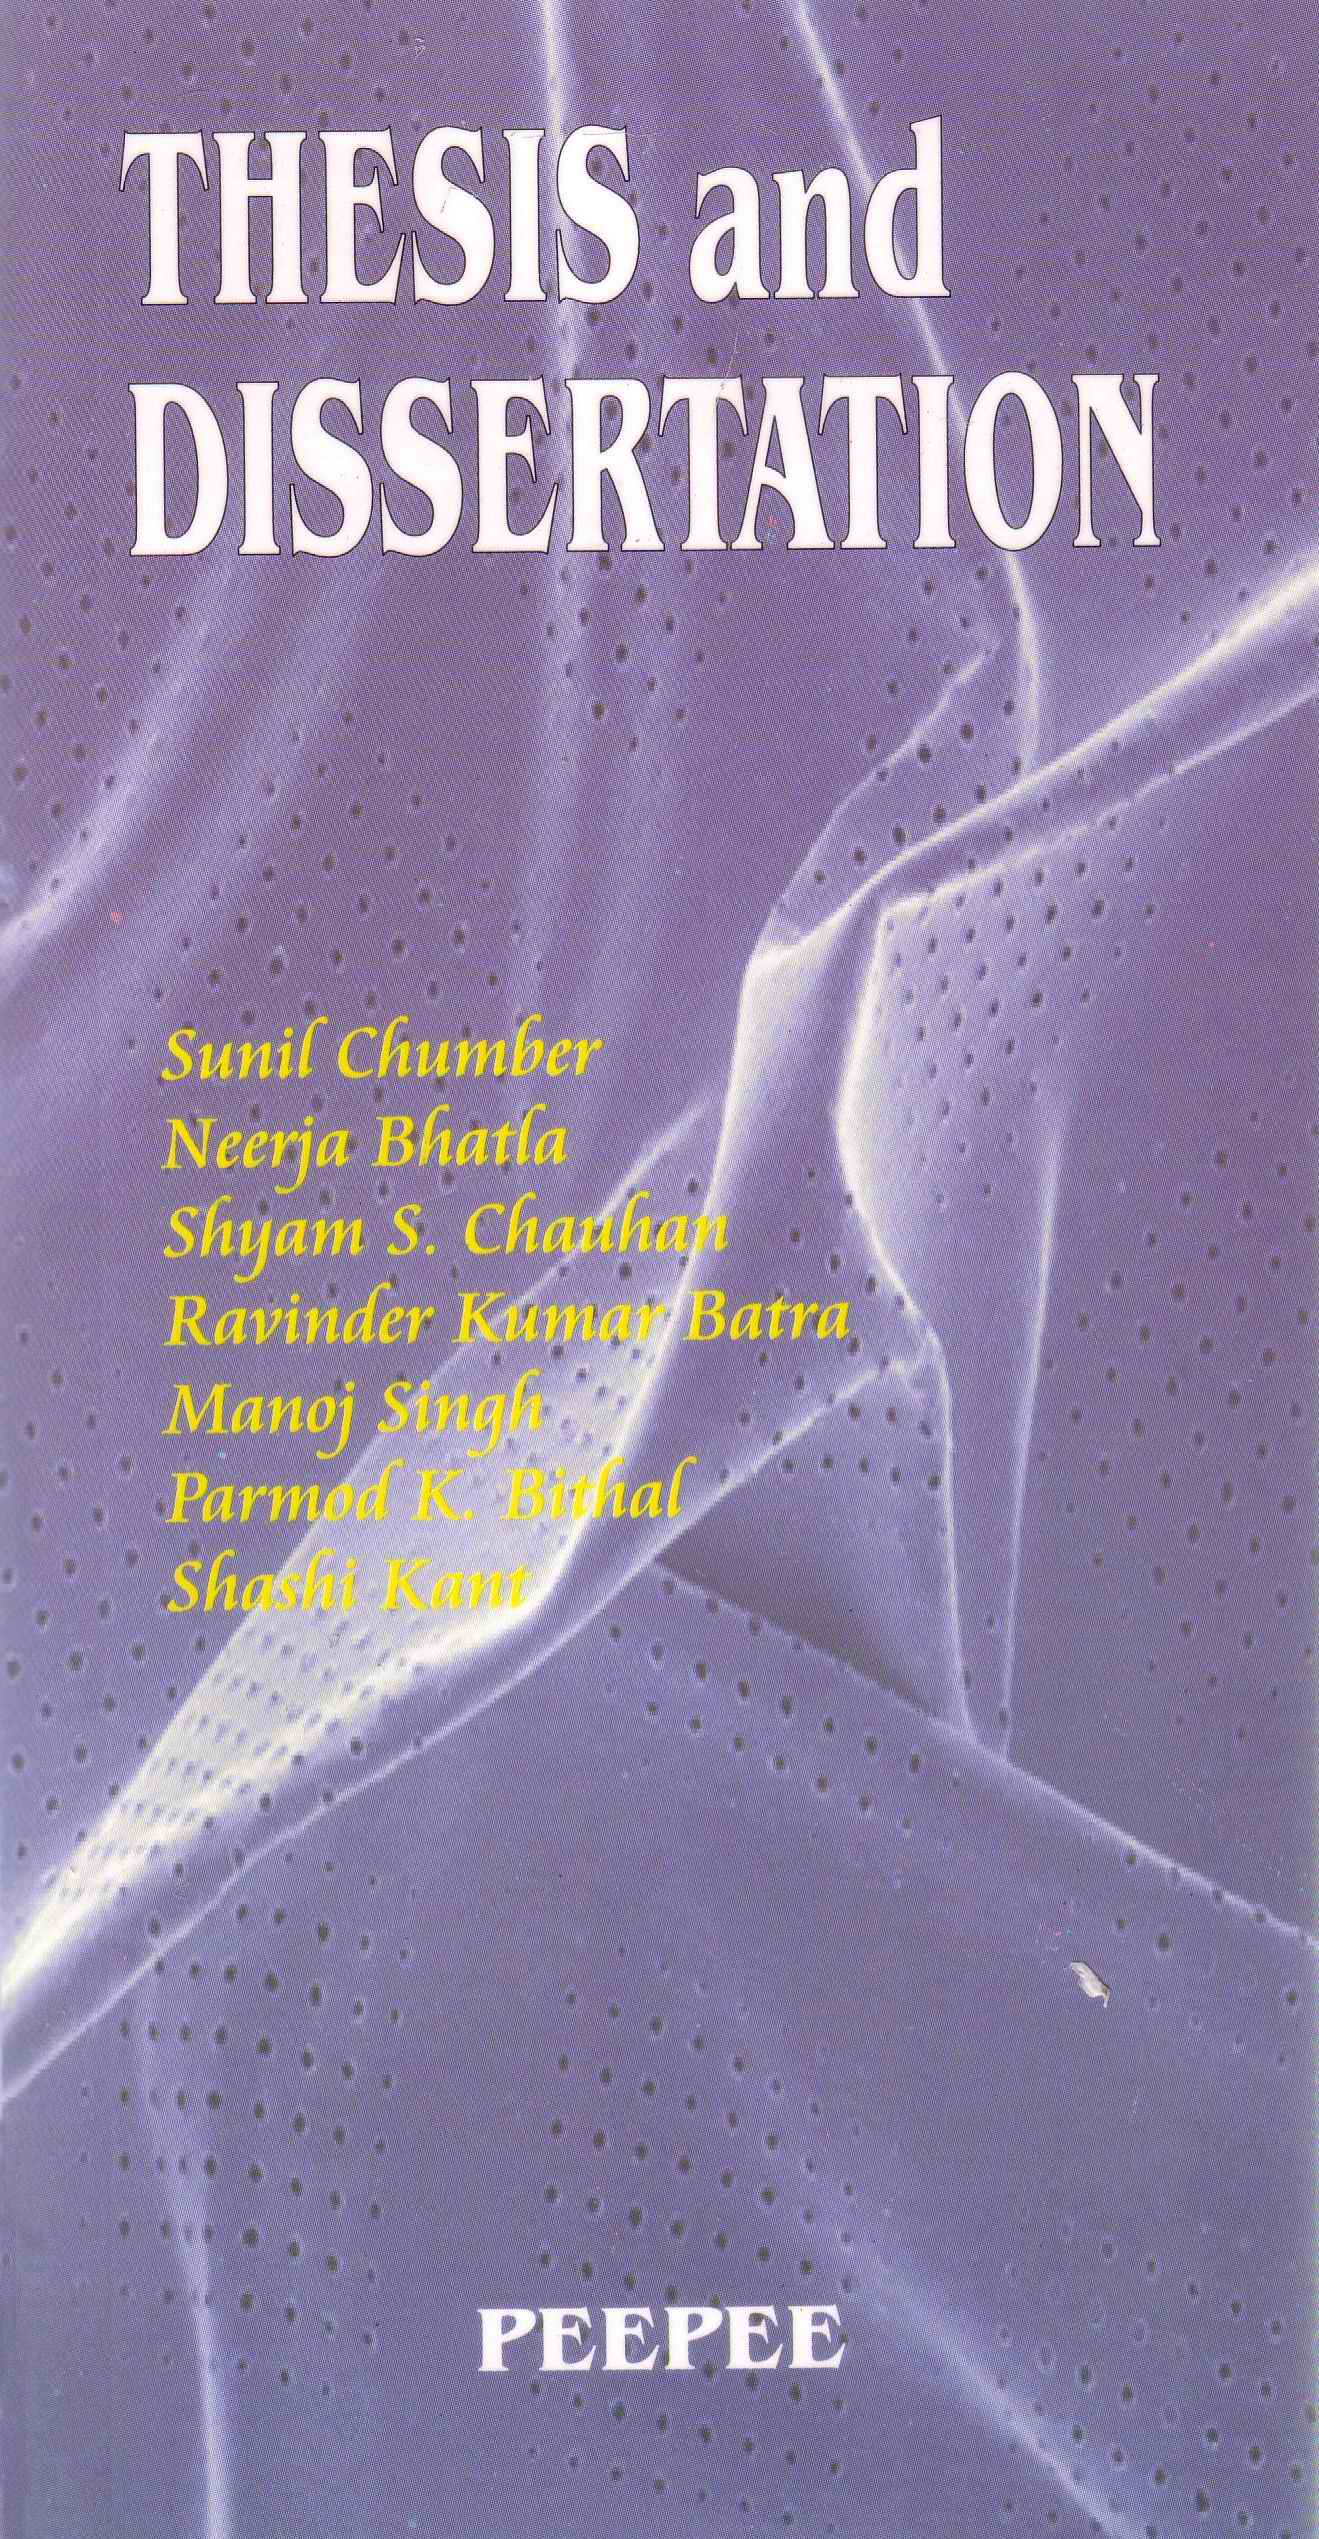 Thesis and Dissertation by Sunil Chumber, Neerja Bhatla, Shyam S. Chauhan, Ravinder Kumar Batra, Manoj Singh, Pramod K. Bithal and Shashi Kant